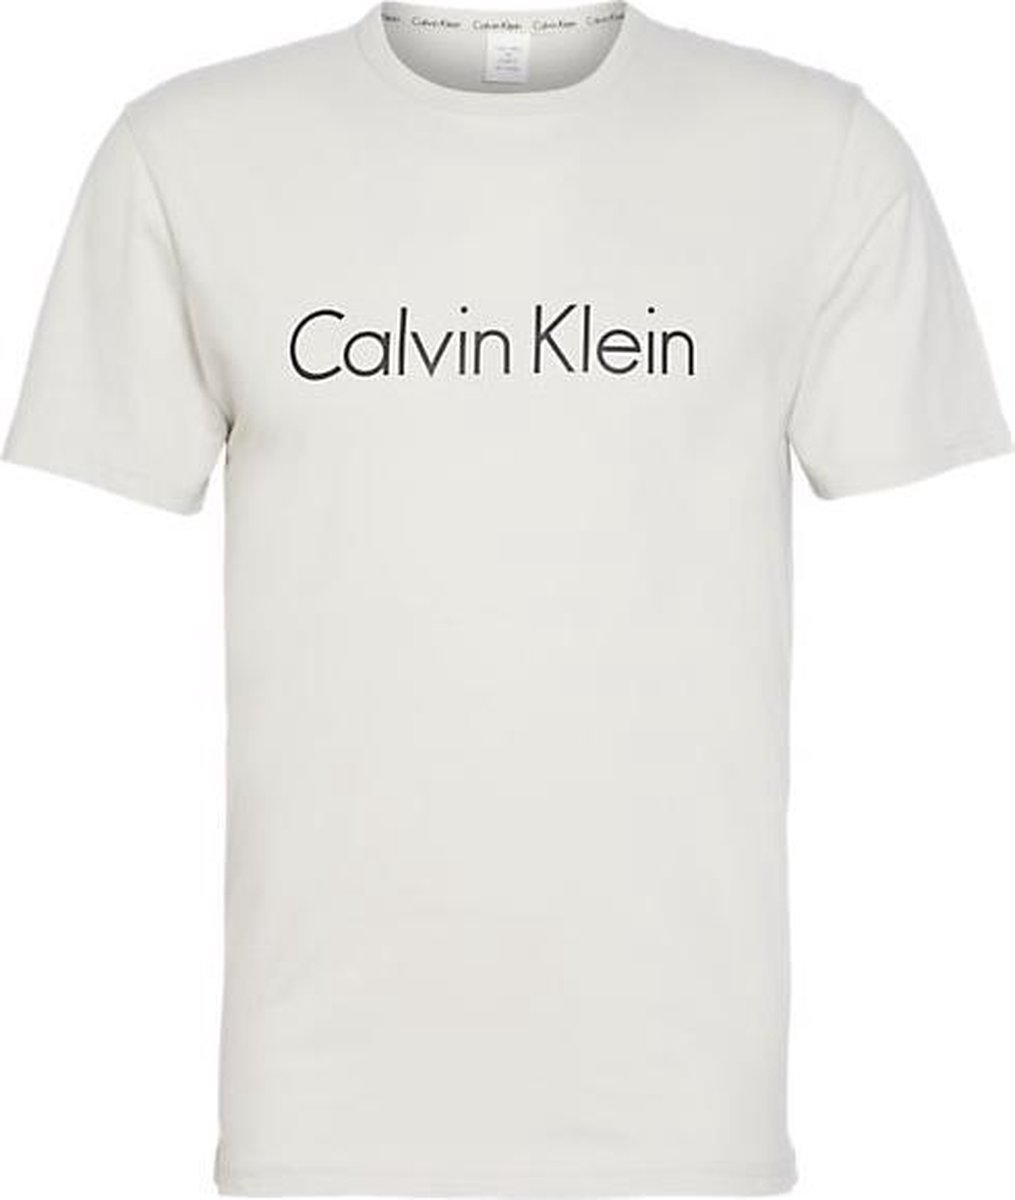 comfortabel Smerig Modderig Calvin Klein heren t-shirt - wit-M | bol.com